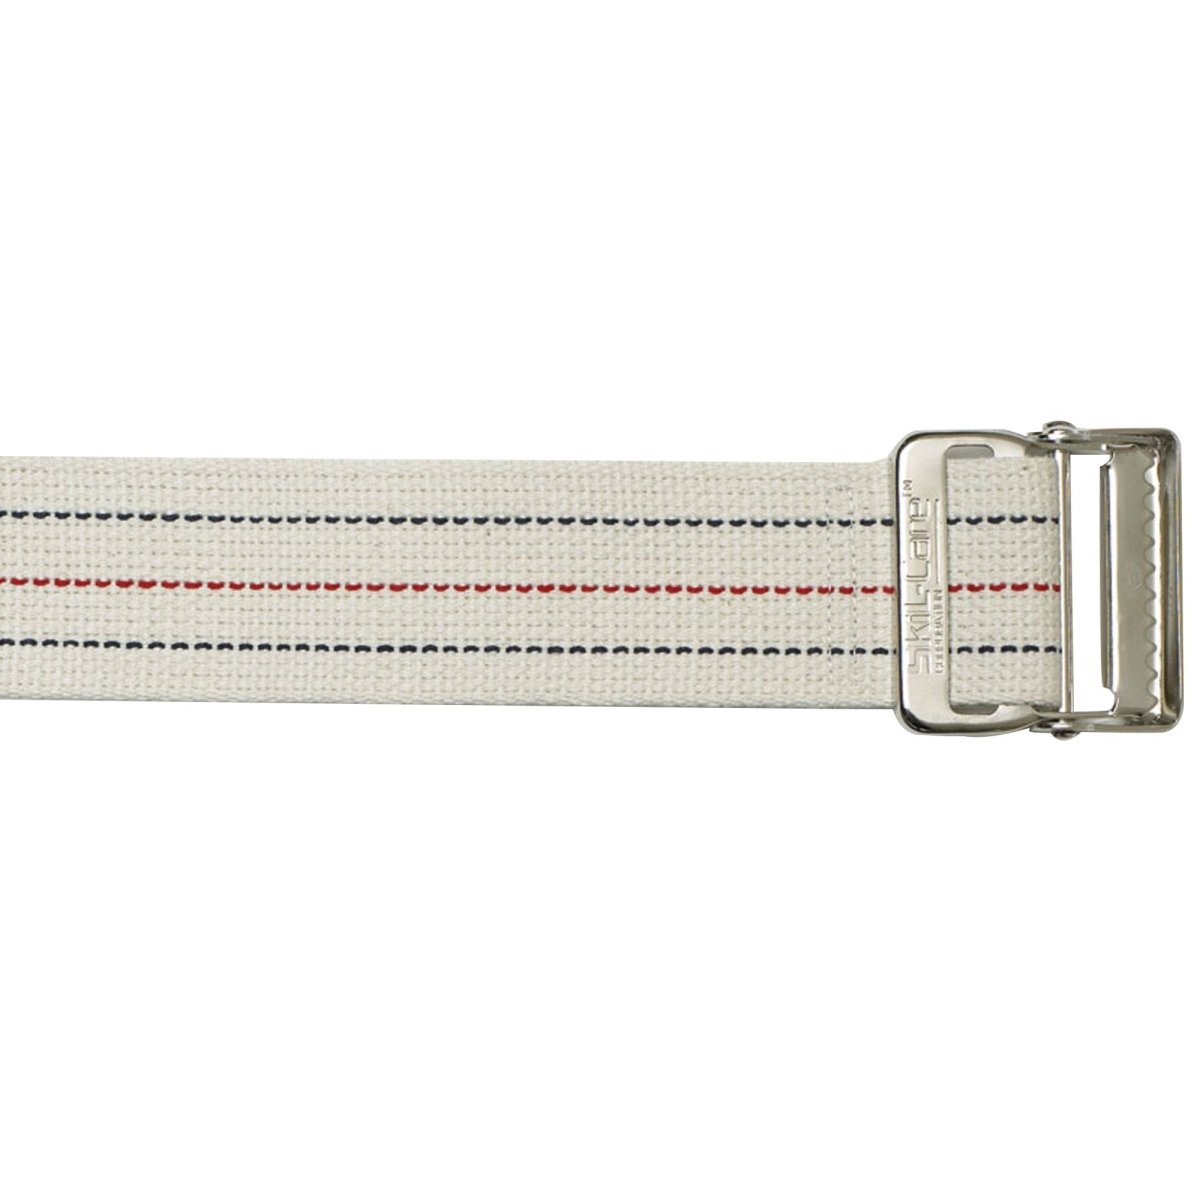 SkiL-Care Standard Gait Belt with Metal Buckle - 170948_EA - 2